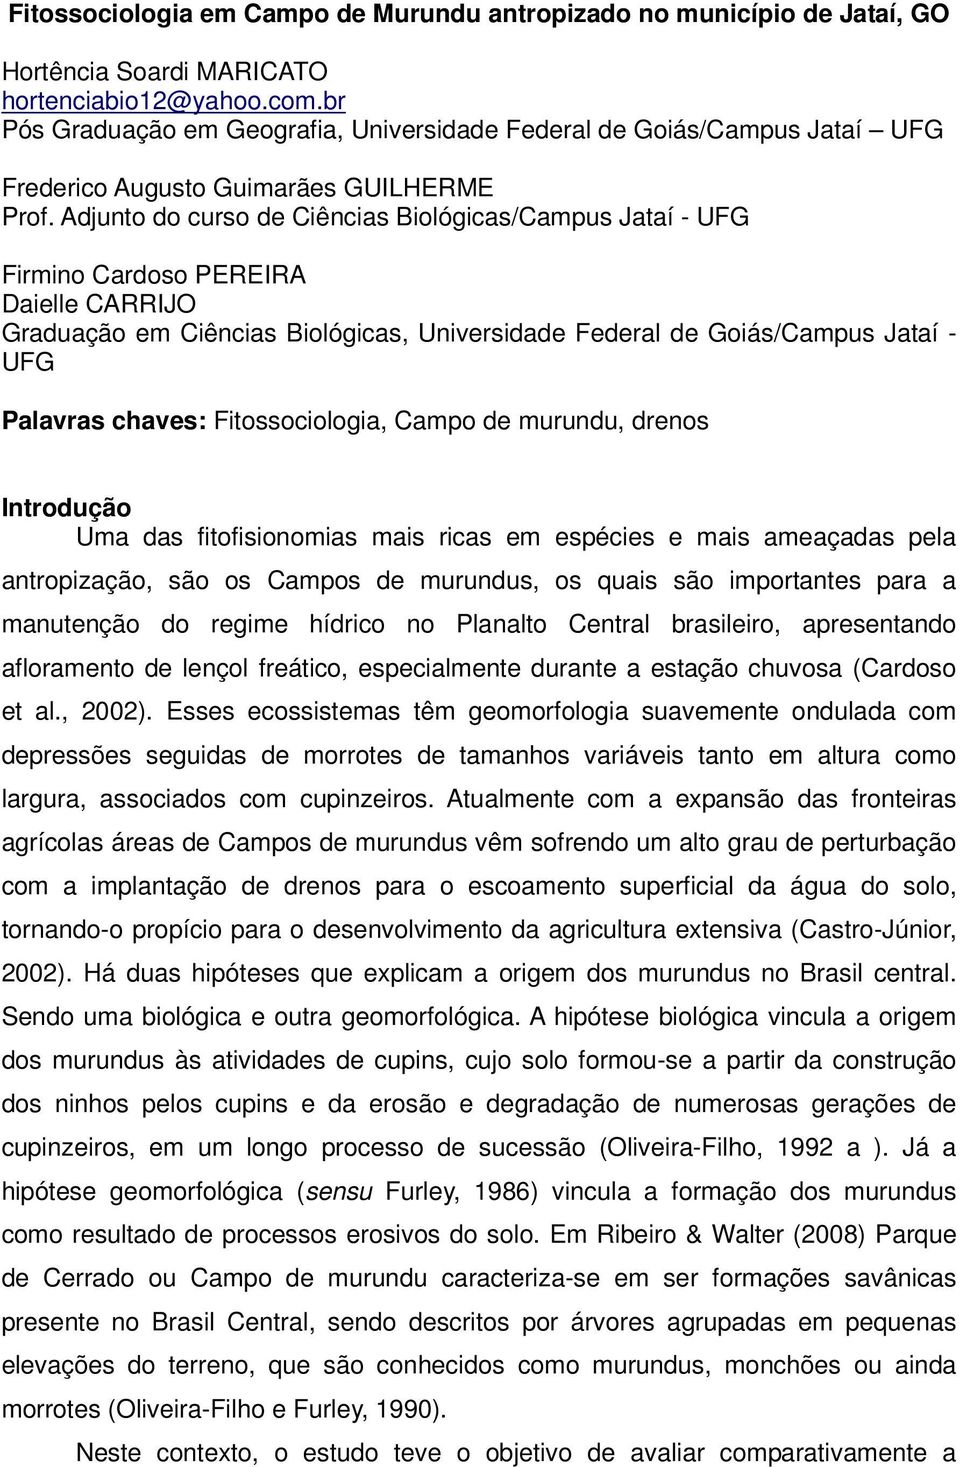 Adjunto do curso de Ciências Biológicas/Campus Jataí - UFG Firmino Cardoso PEREIRA Daielle CARRIJO Graduação em Ciências Biológicas, Universidade Federal de Goiás/Campus Jataí - UFG Palavras chaves: